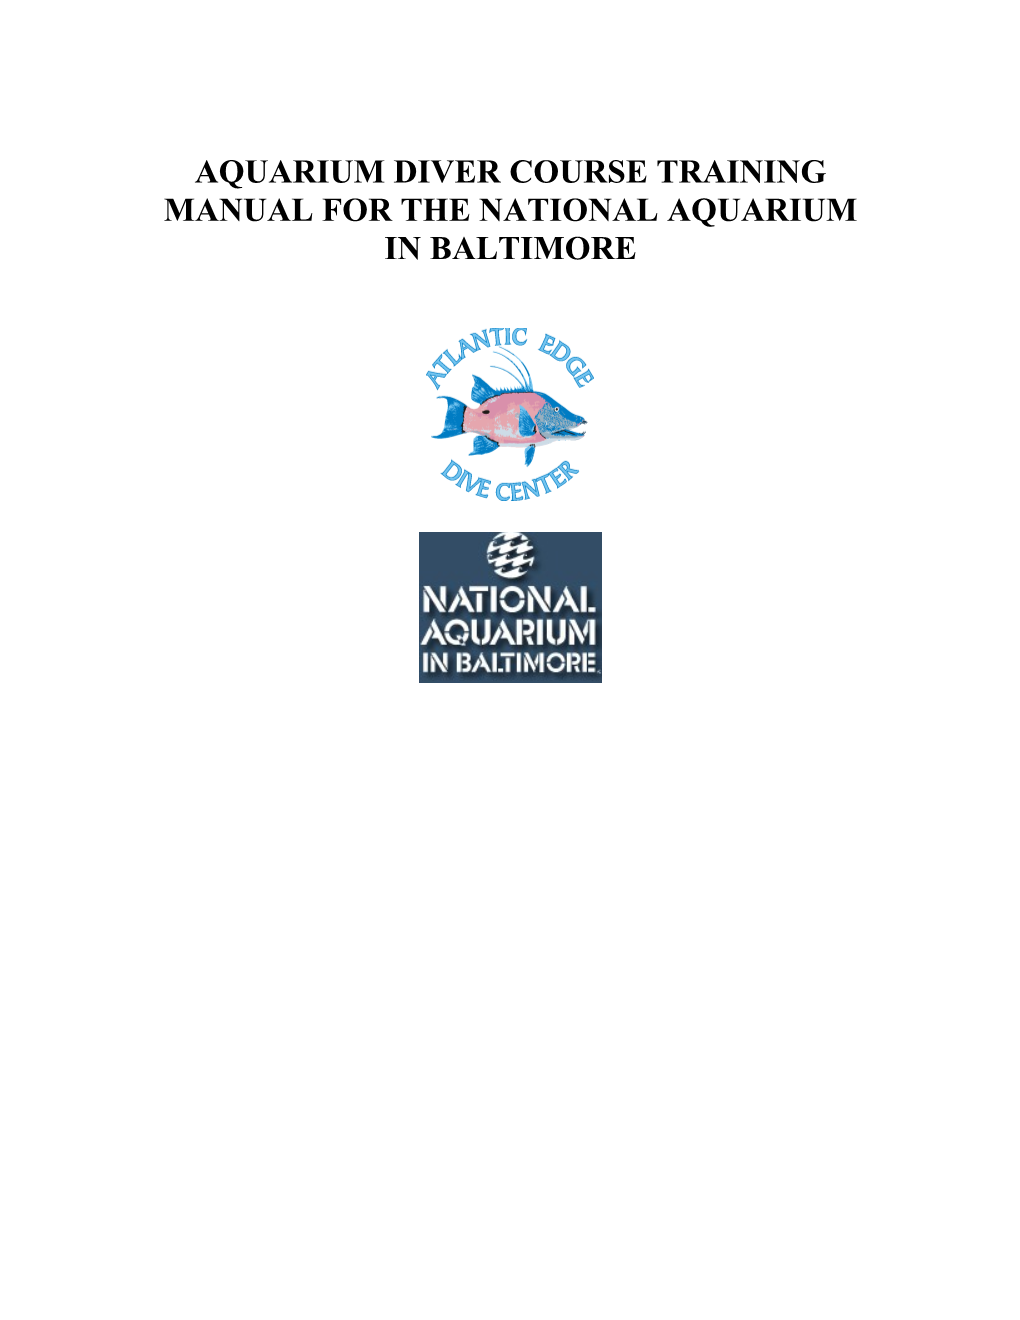 Aquarium Diver Course Training Manual for the National Aquarium in Baltimore